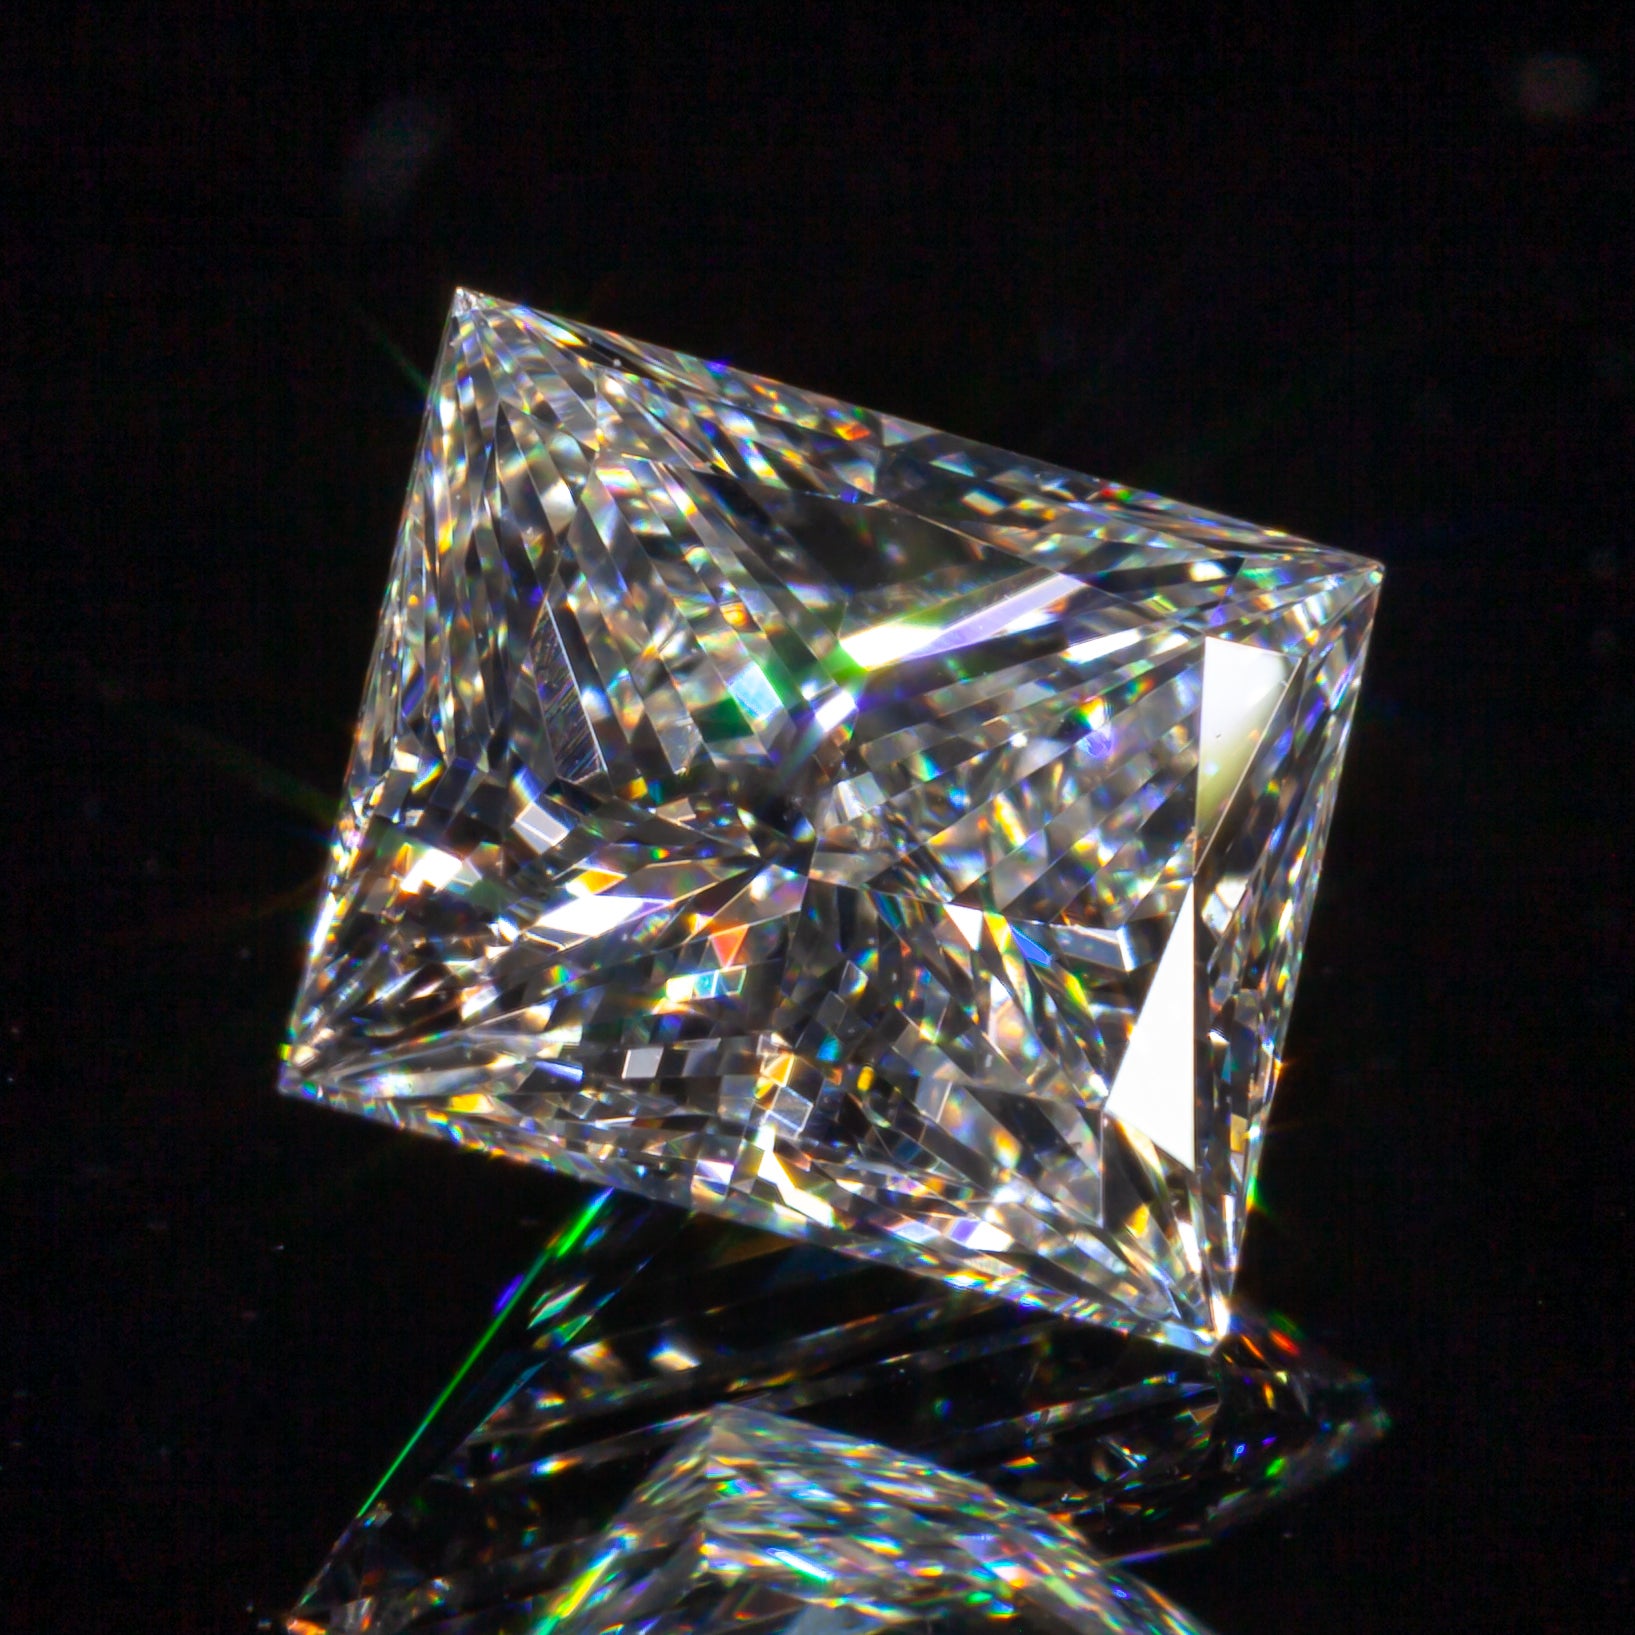 1,05 Karat Loser H/VS2 rechteckiger Modified Brillant-Diamant GIA-zertifiziert

Diamant Allgemeine Informationen
GIA-Berichtsnummer: 2185448167
Diamant-Schliff: Rechteckig Modifizierter Brillant
Abmessungen: 6,03 x 5,52 x 3,71 mm

Ergebnisse der